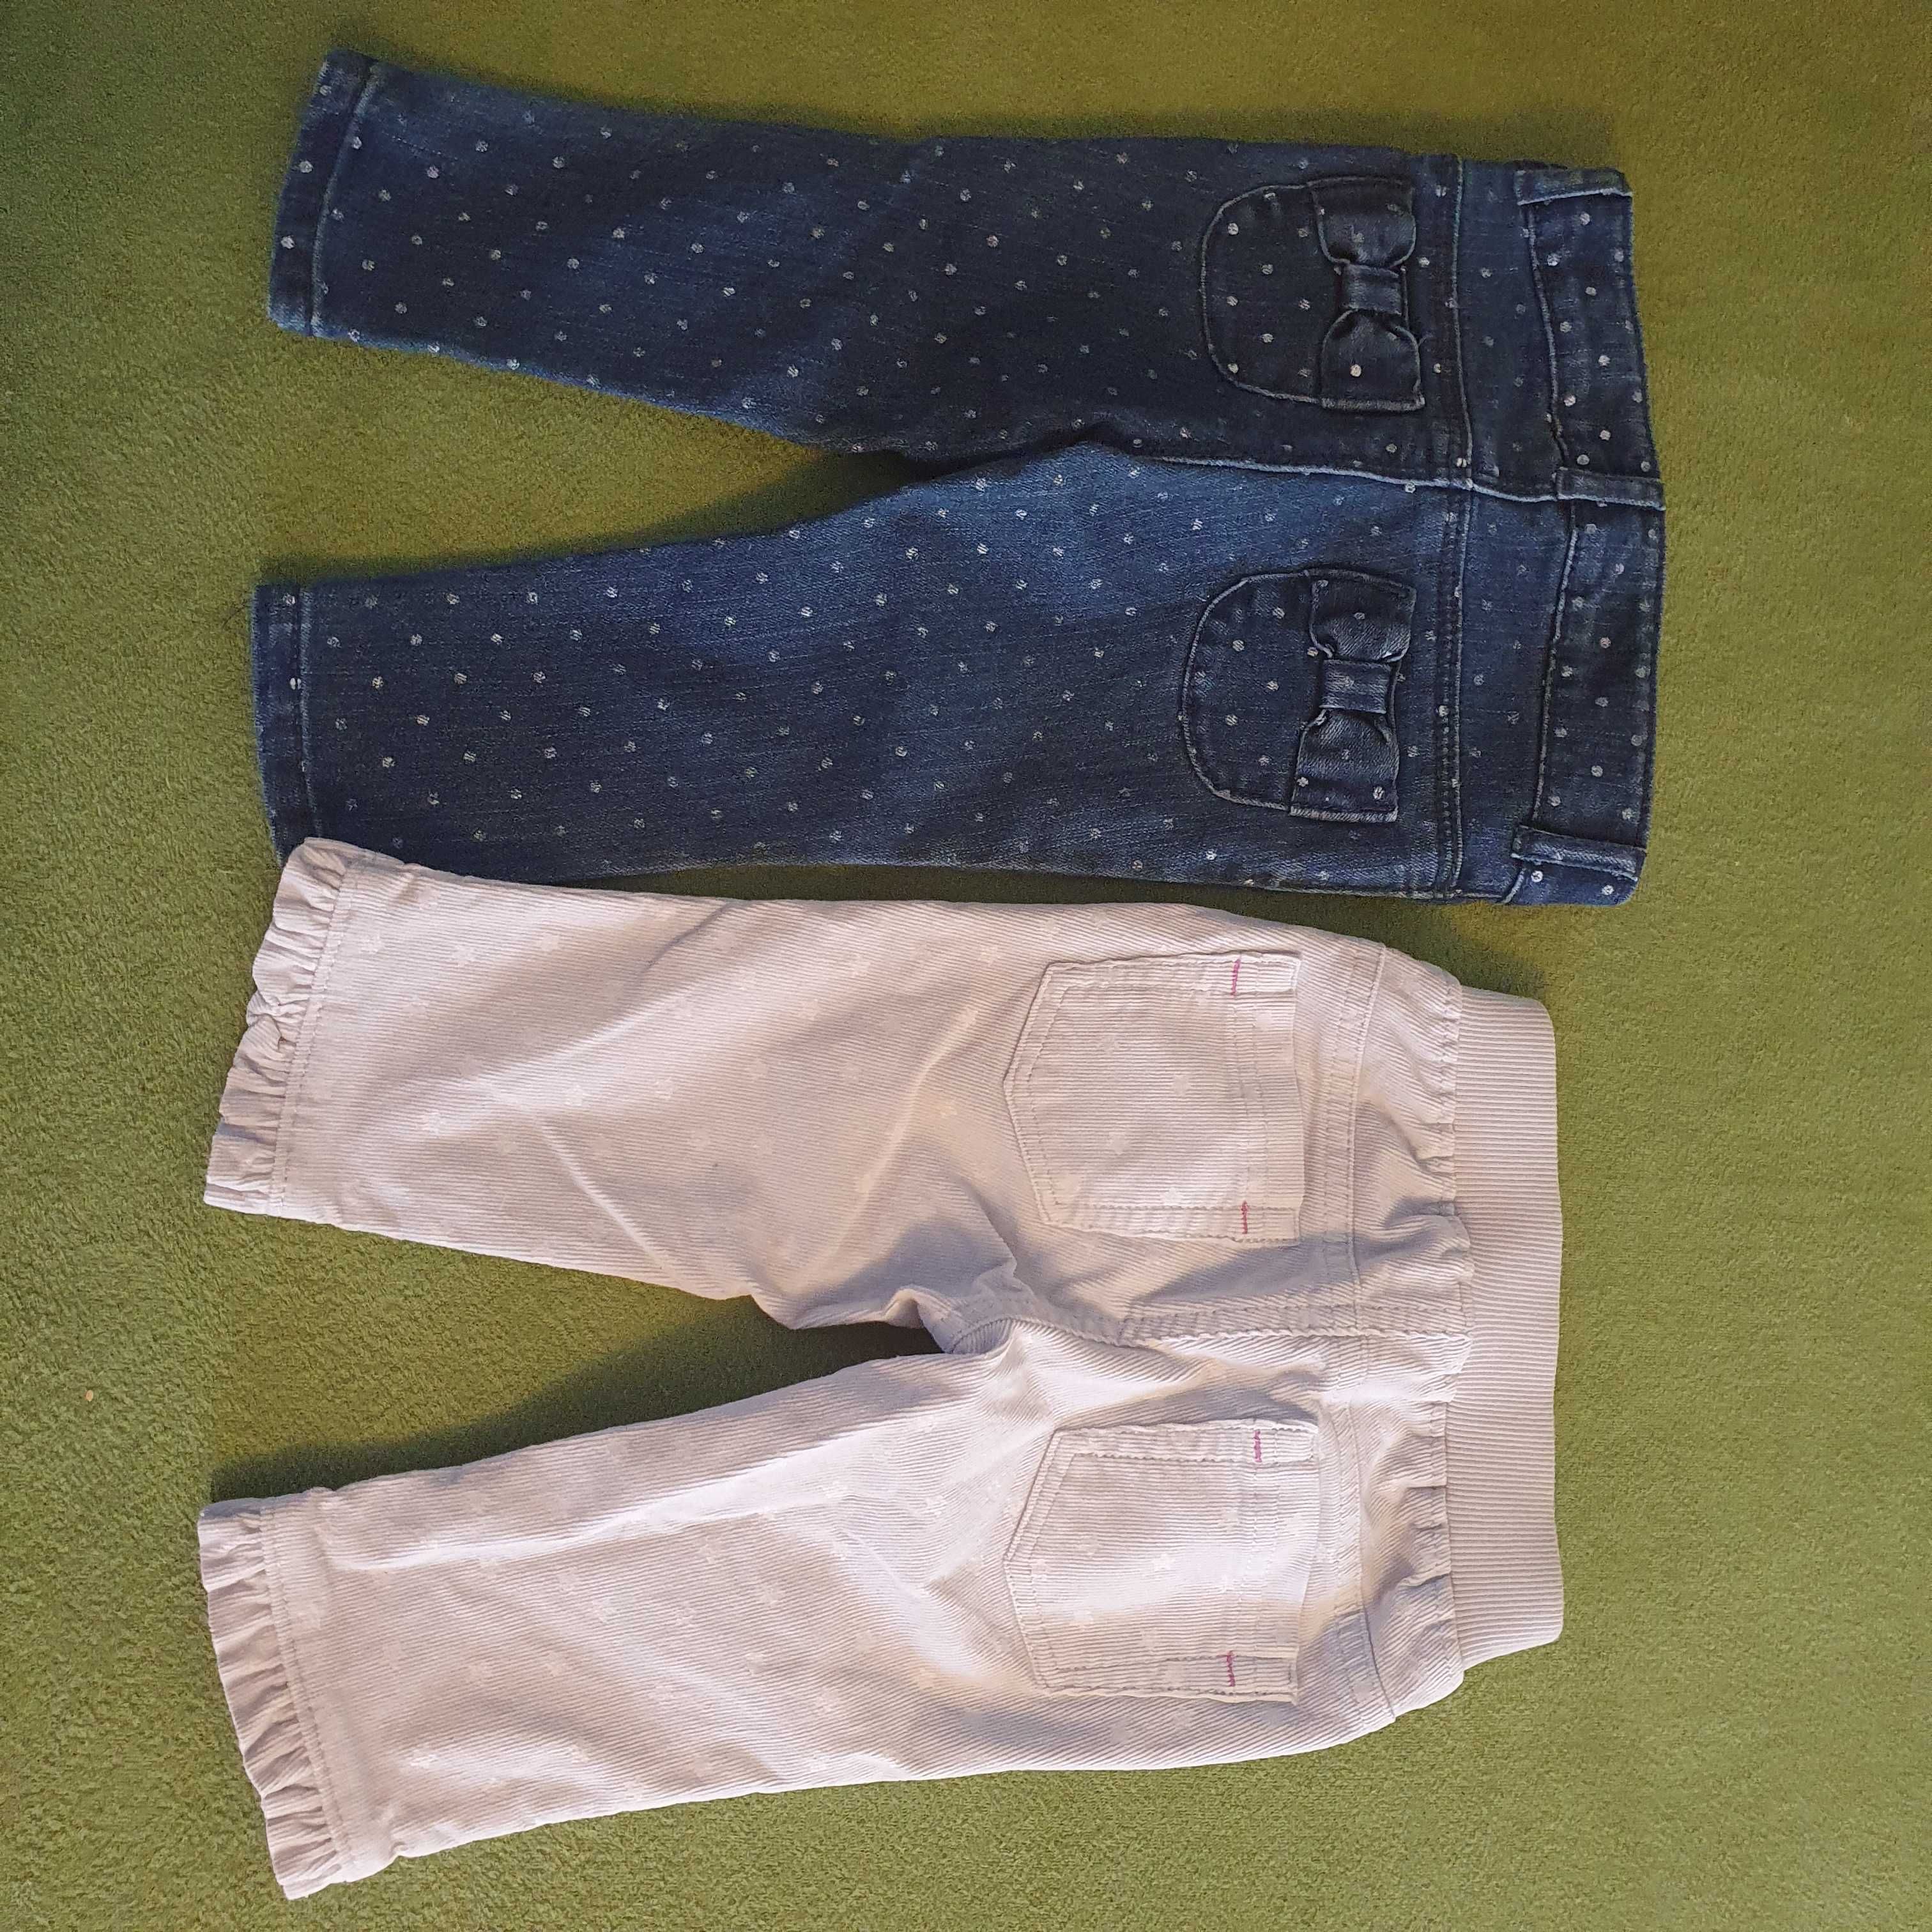 2x spodnie marki Gymboree, 6-12 miesięcy,stan idealny